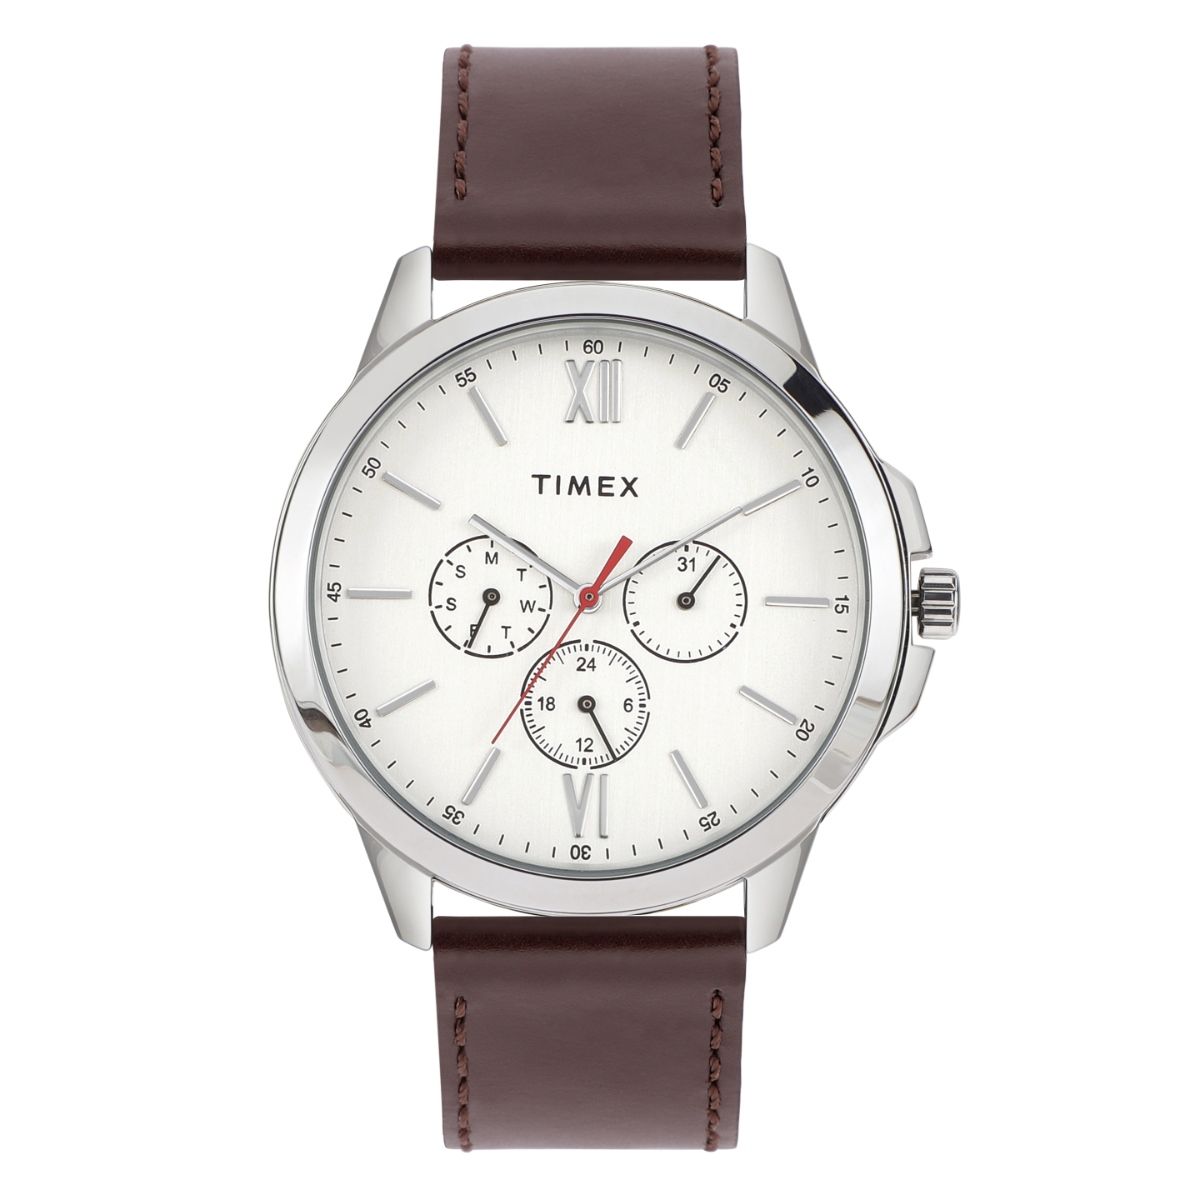 Buy Timex Lab TW2U72400U9 Digital Watch for Men at Best Price @ Tata CLiQ